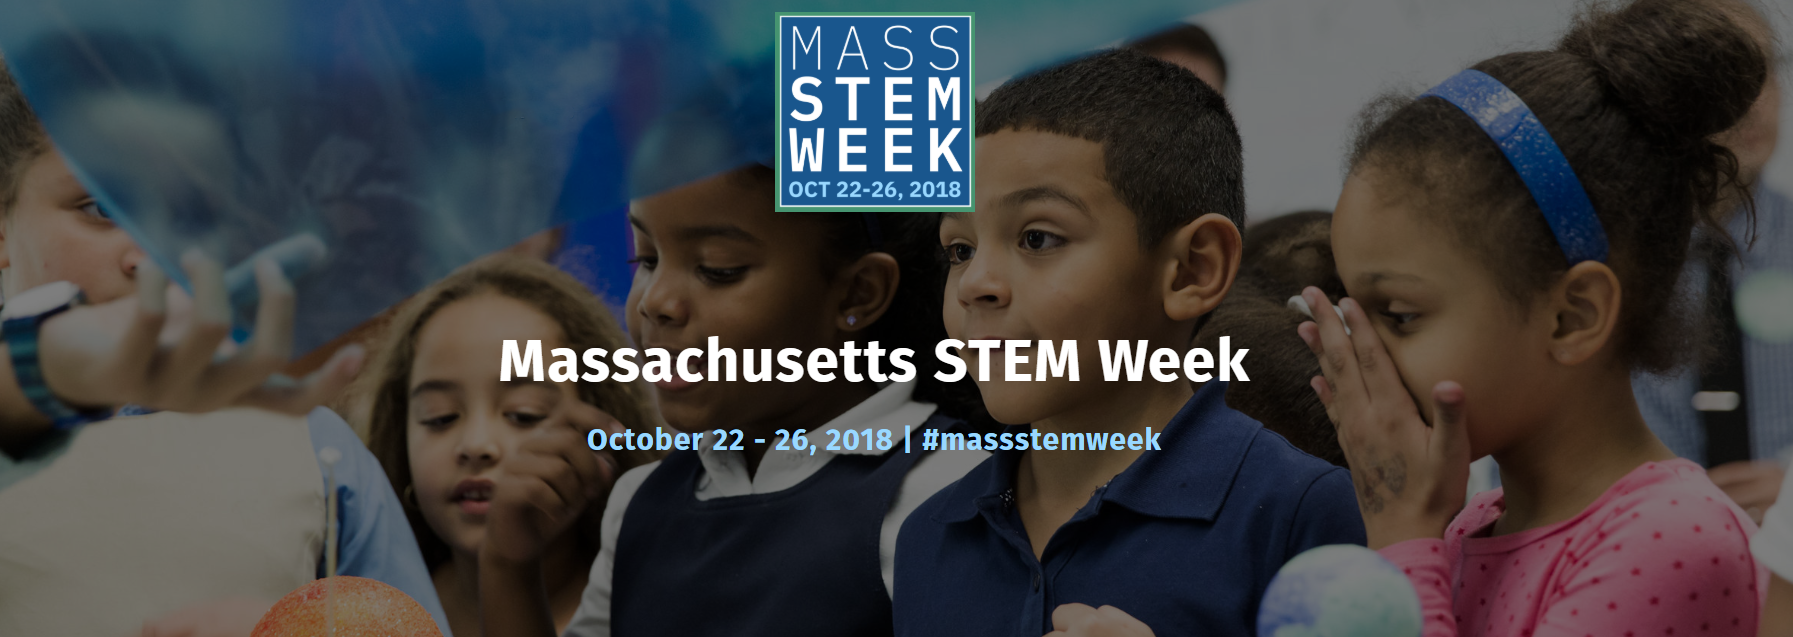 Massachusetts STEM Week